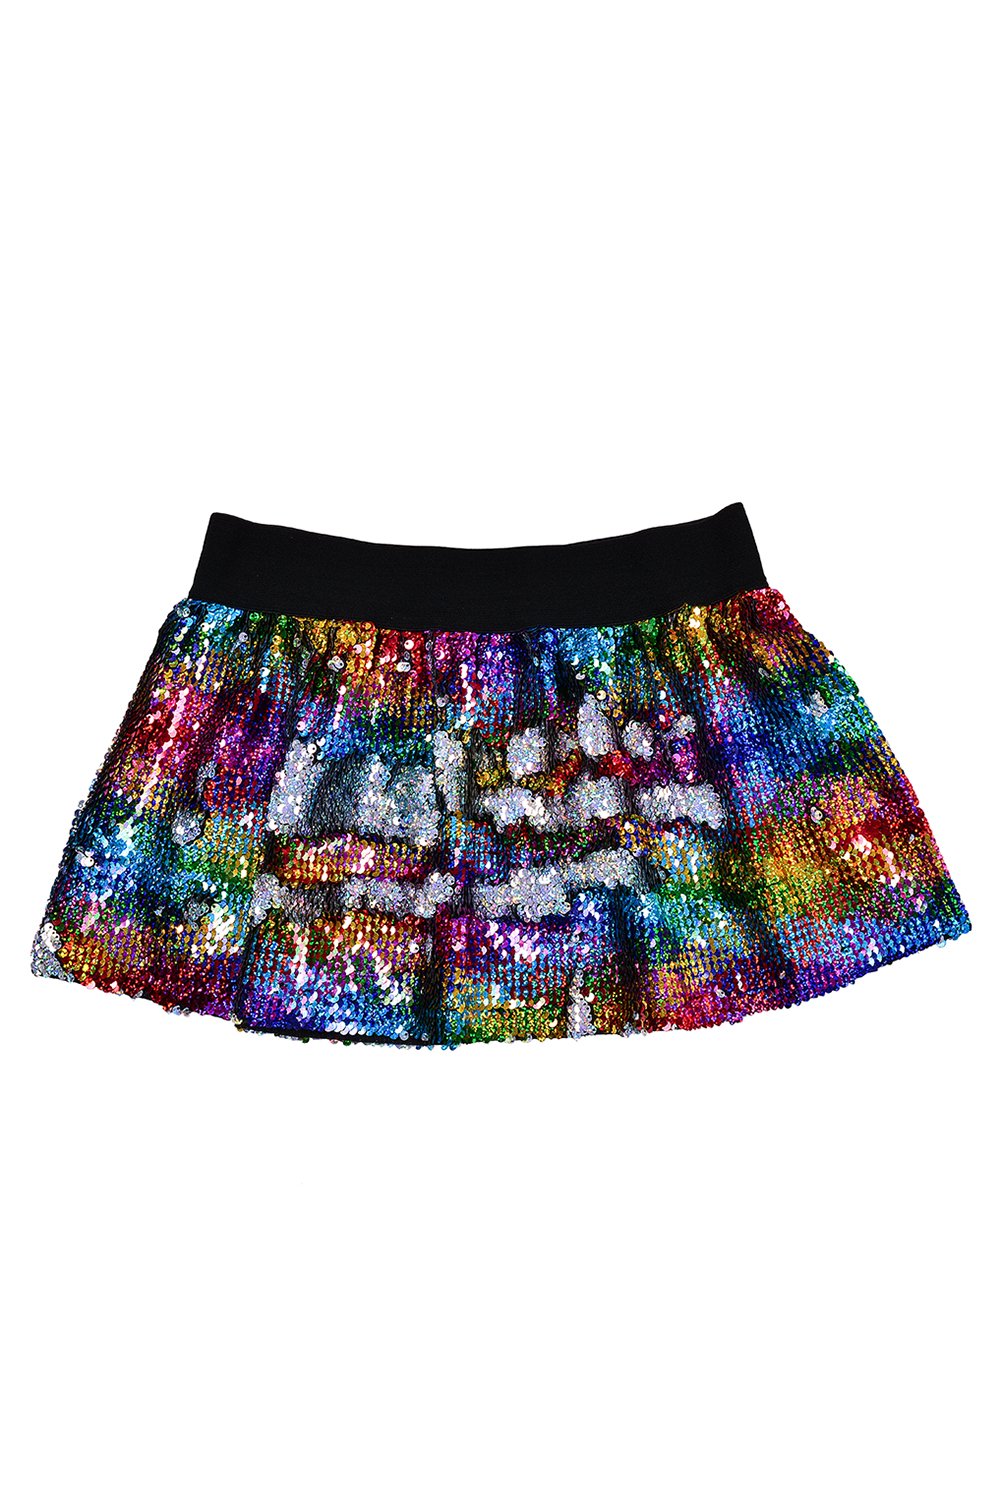 Dreamy Rainbow Skirt